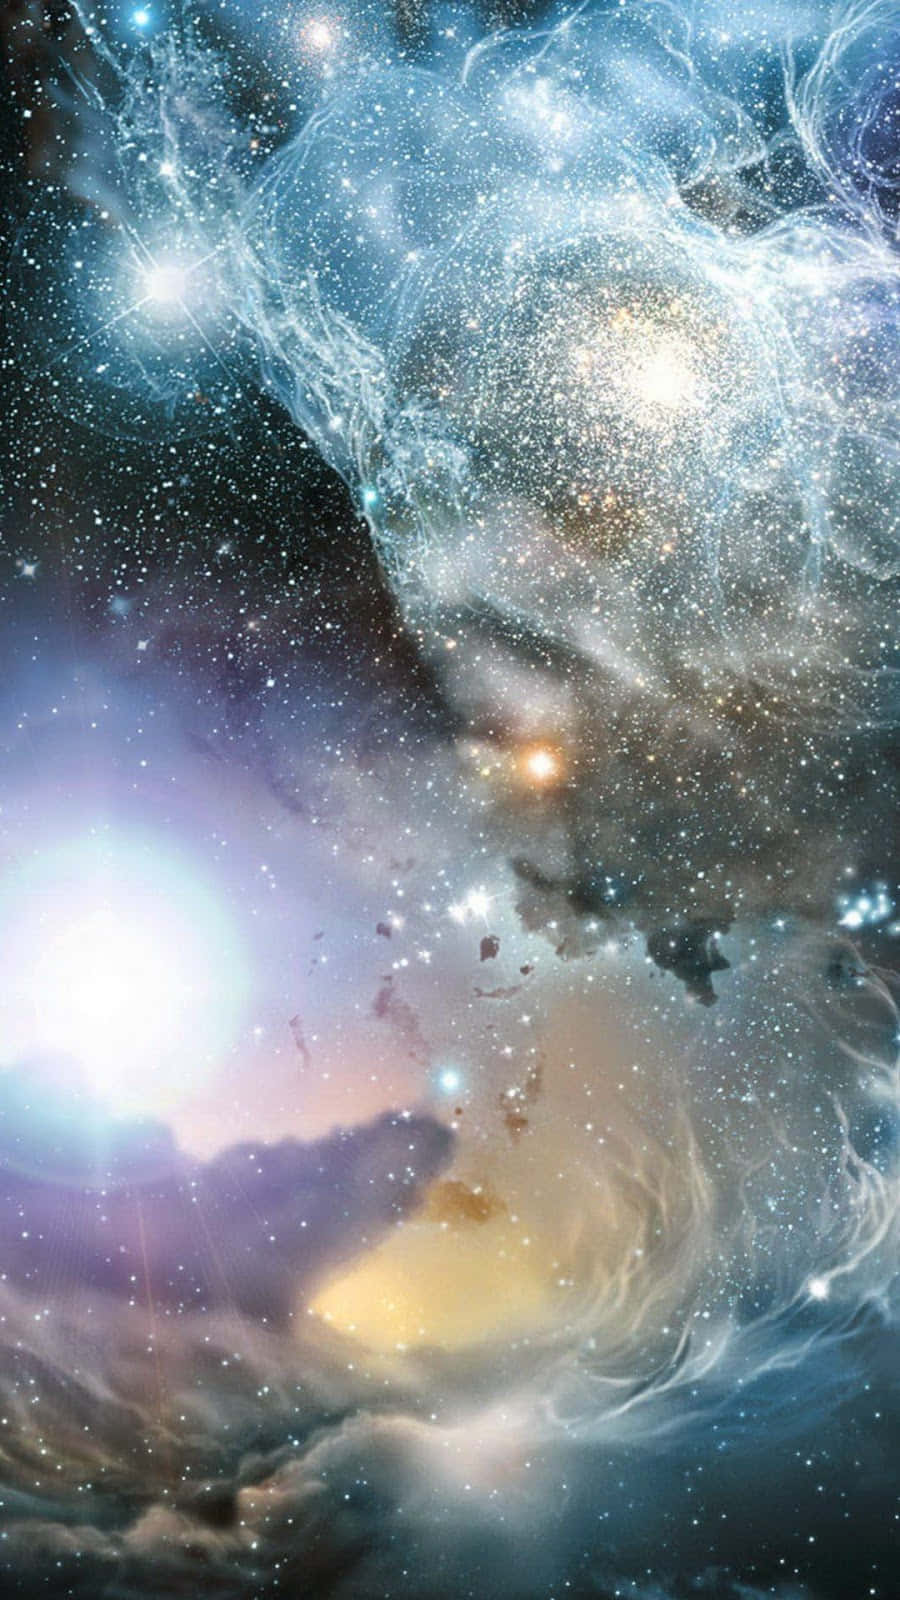 Betragtden Kosmiske Skønhed Af En Stjerneklar Nat På Din Computer Eller Mobilbaggrund.